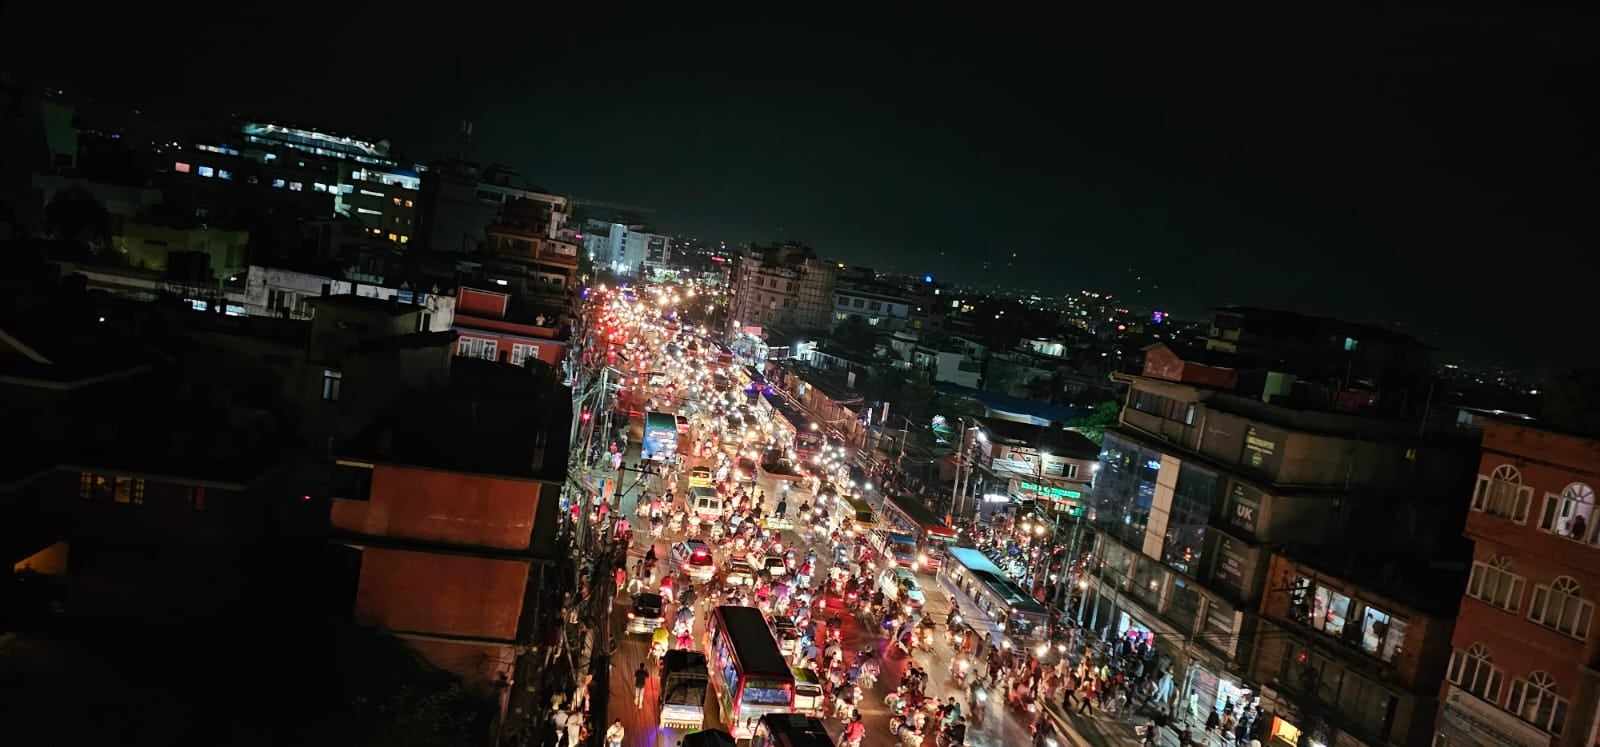 काठमाडौंको महाराजगन्ज चोकमै बम विस्फोट 